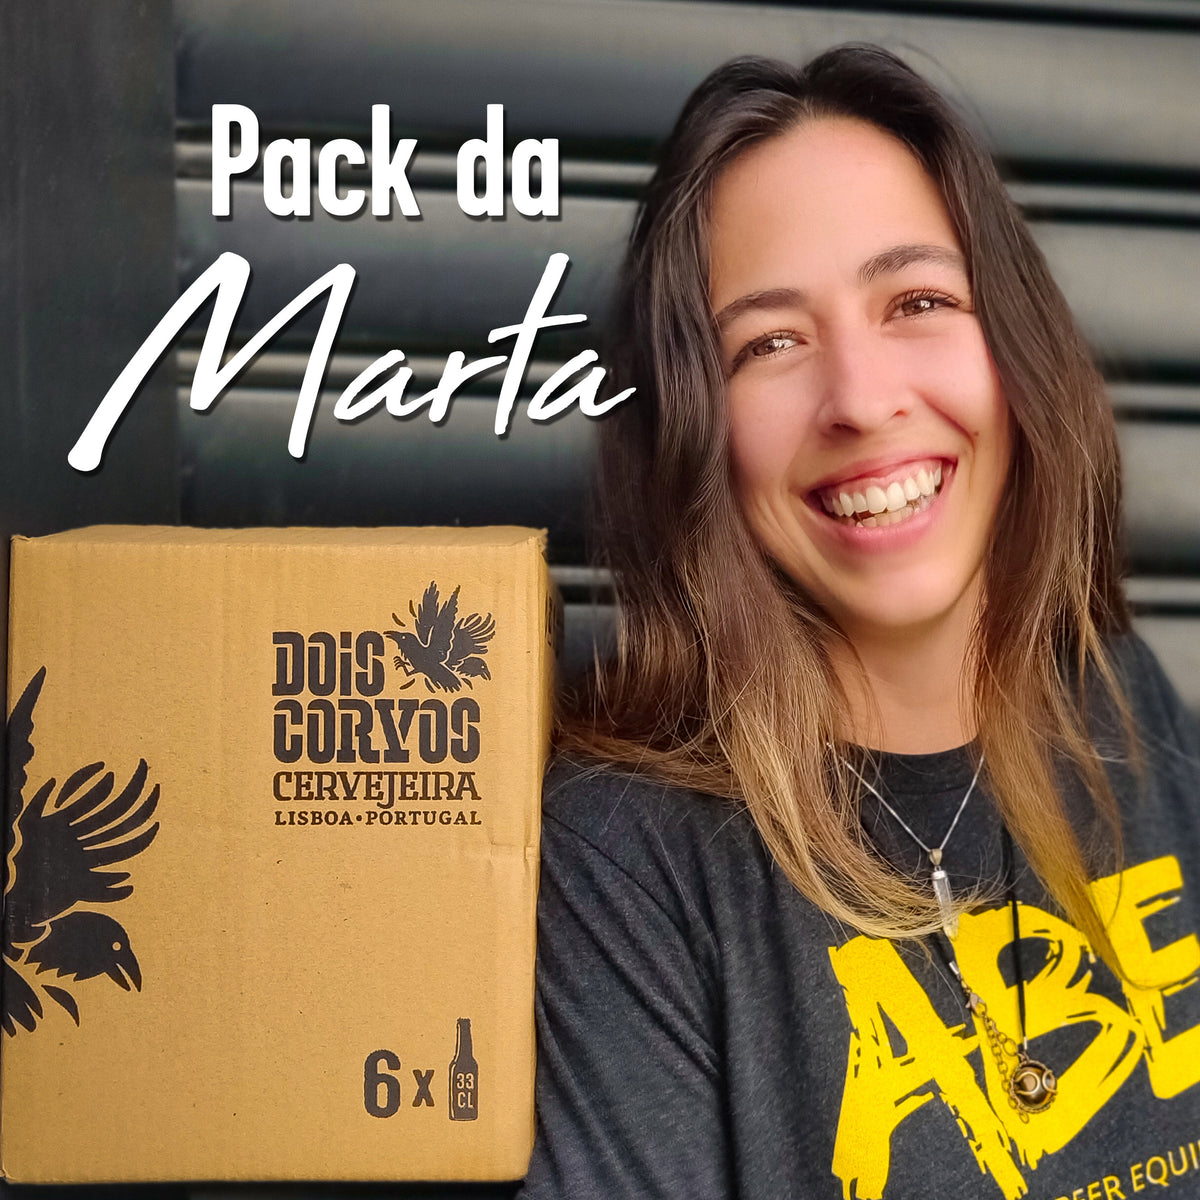 Dois Corvos Pack da Marta - 12 Cervejas - Dois Corvos Cervejeira